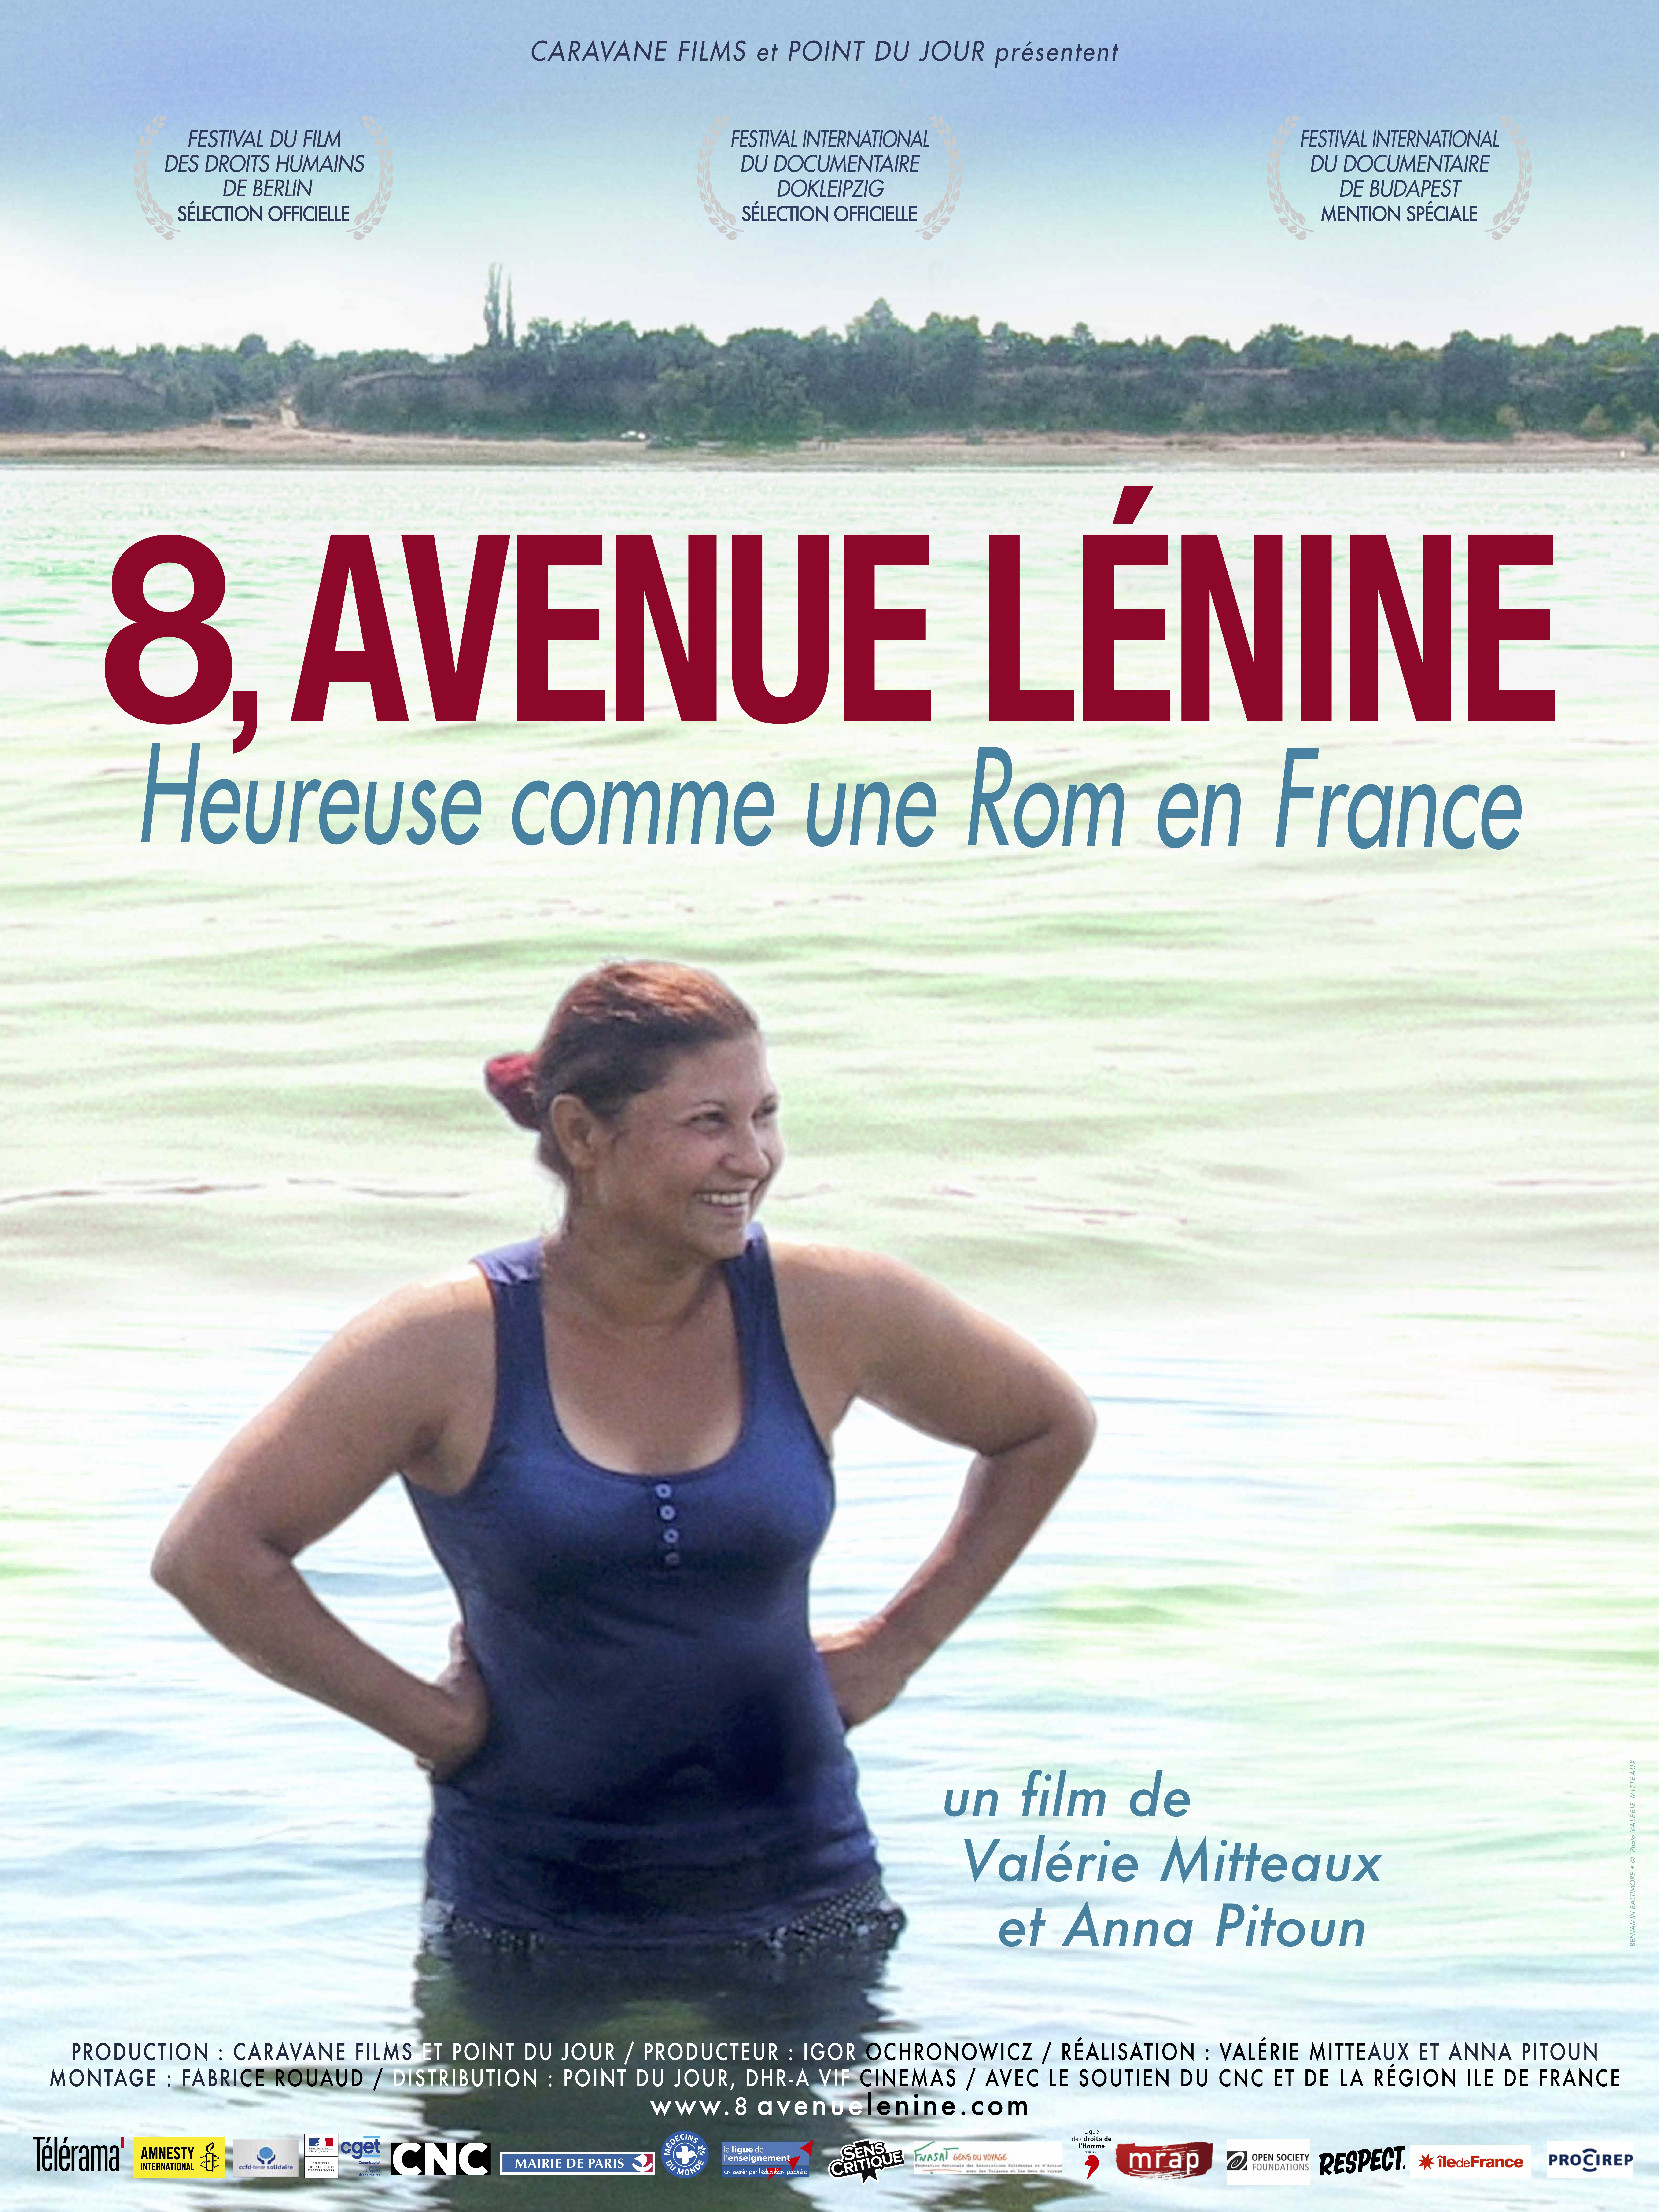 8, avenue Lénine. Heureuse comme une Rom en France. Un film de Valérie Mitteaux et Anna Pitoun